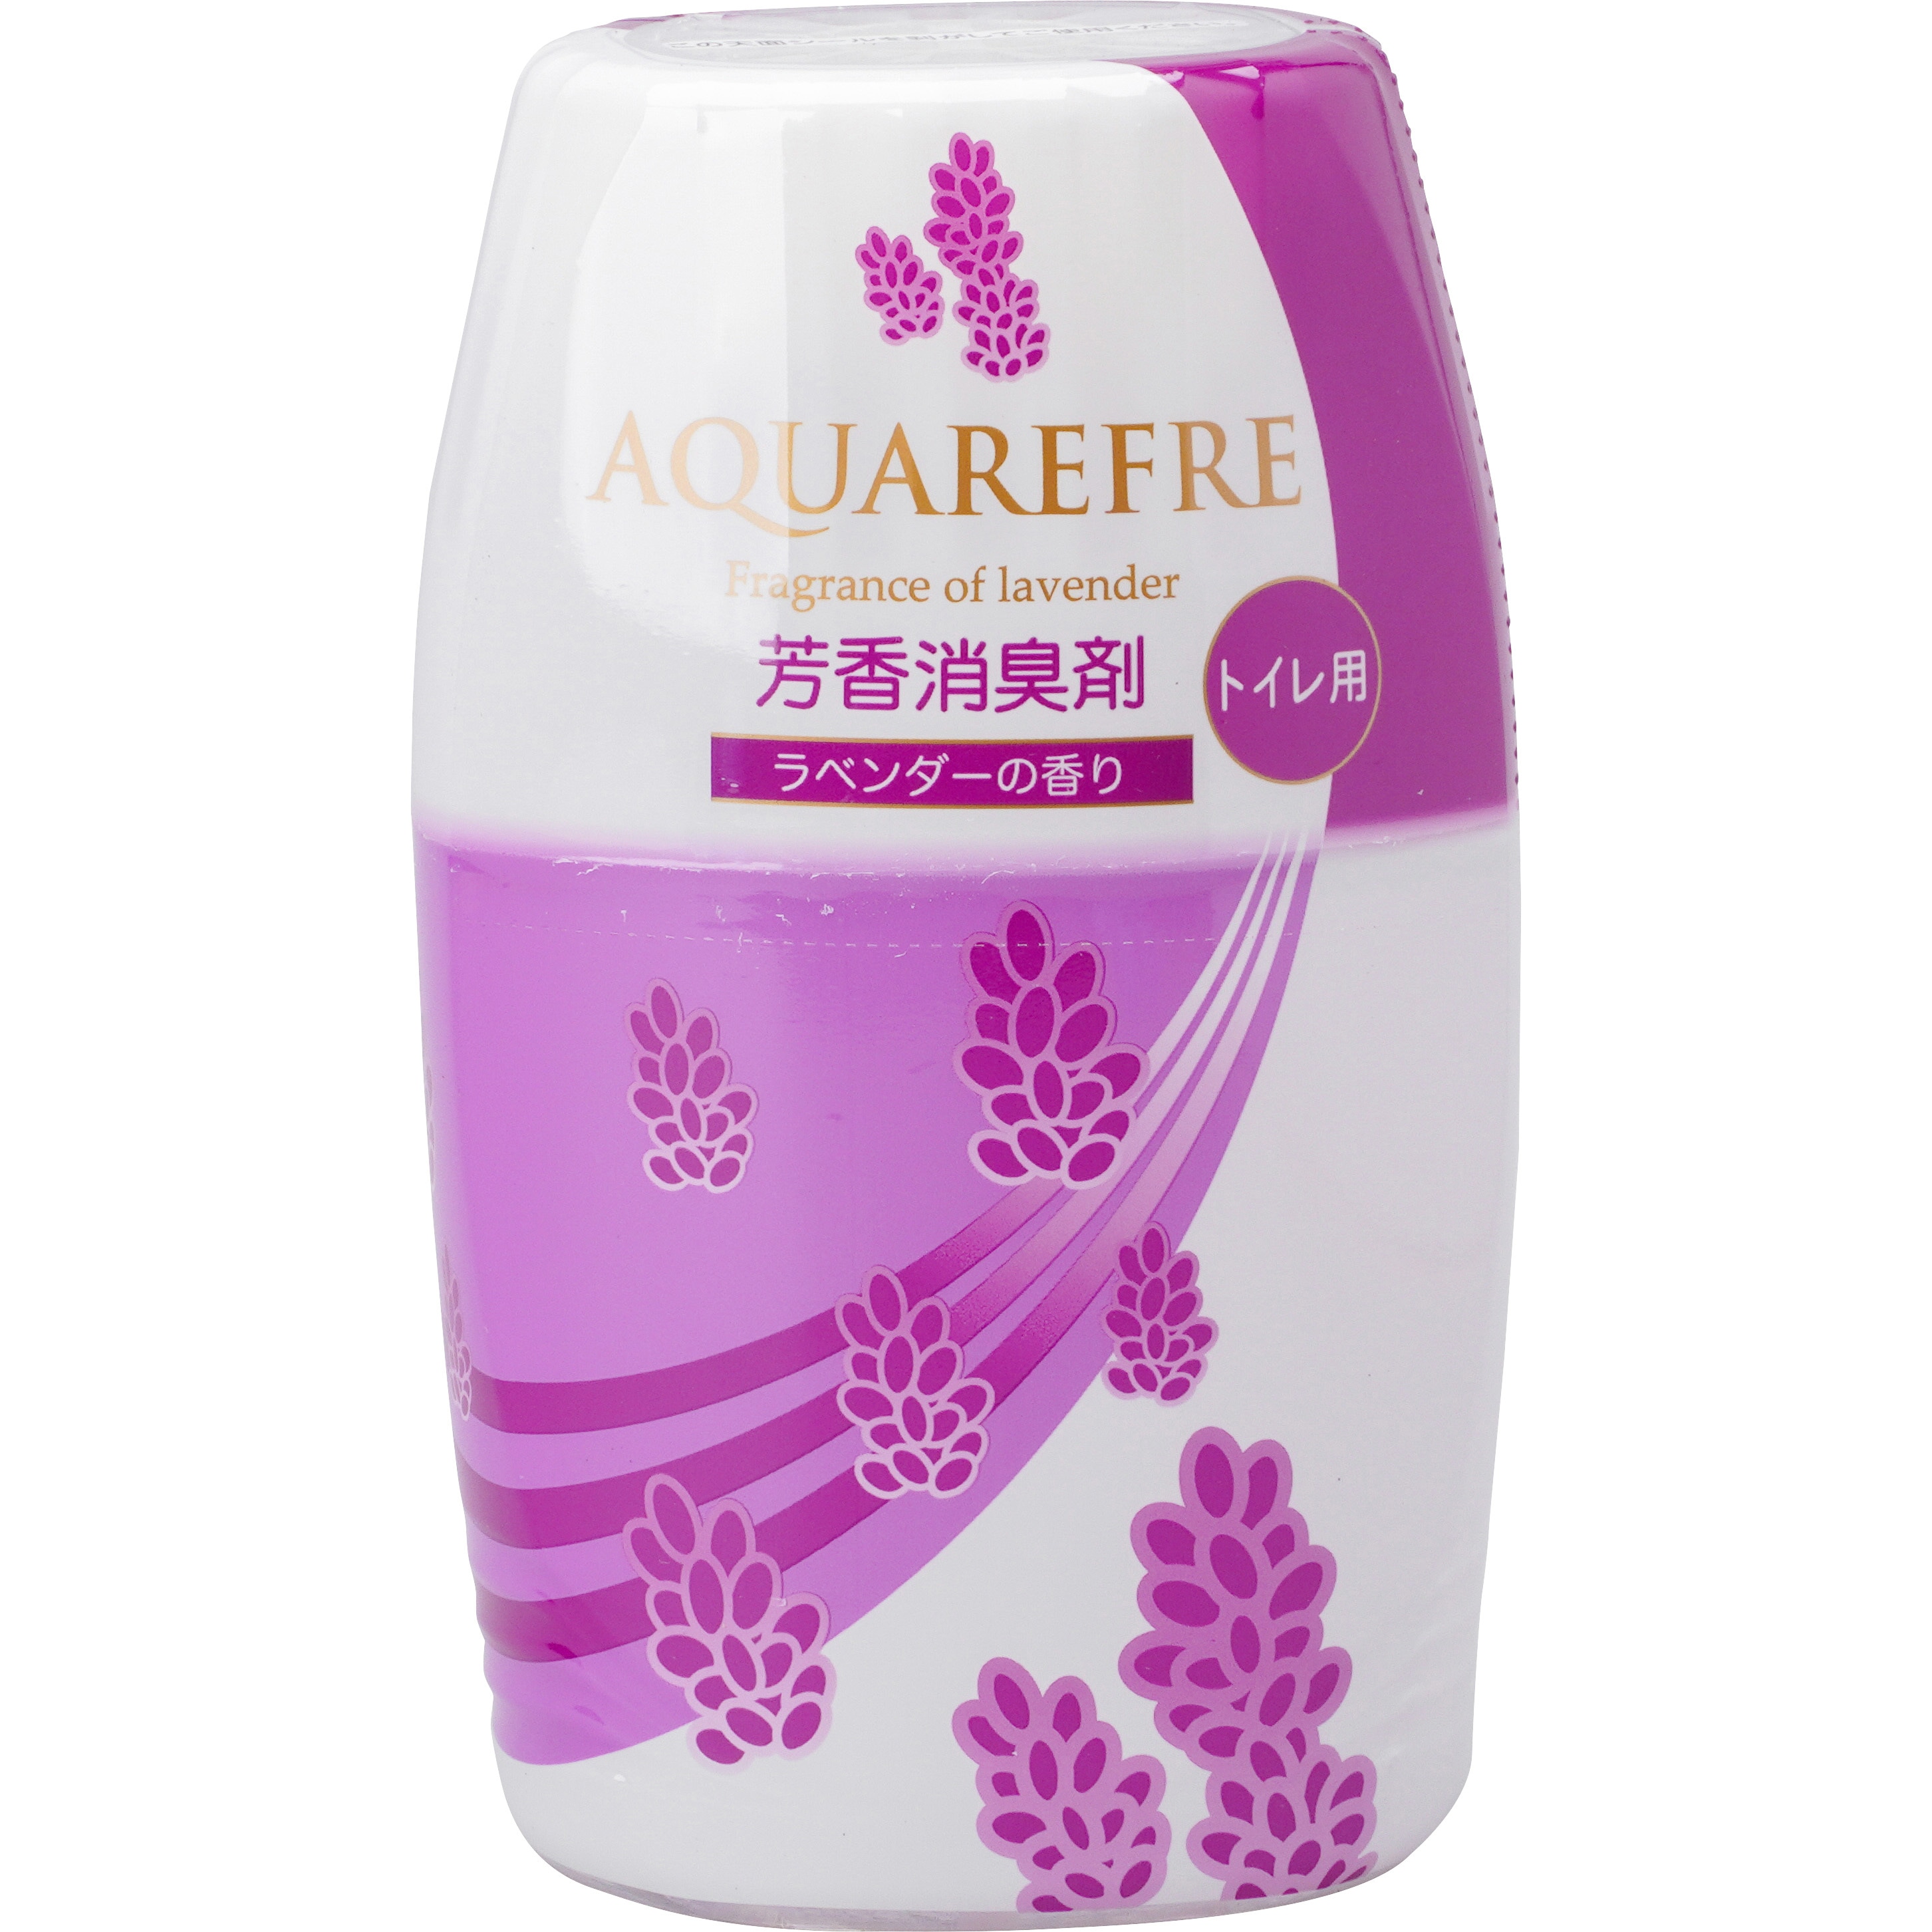 新アクアリフレ トイレ用 芳香消臭剤 1個(400mL) リベロ 【通販サイト